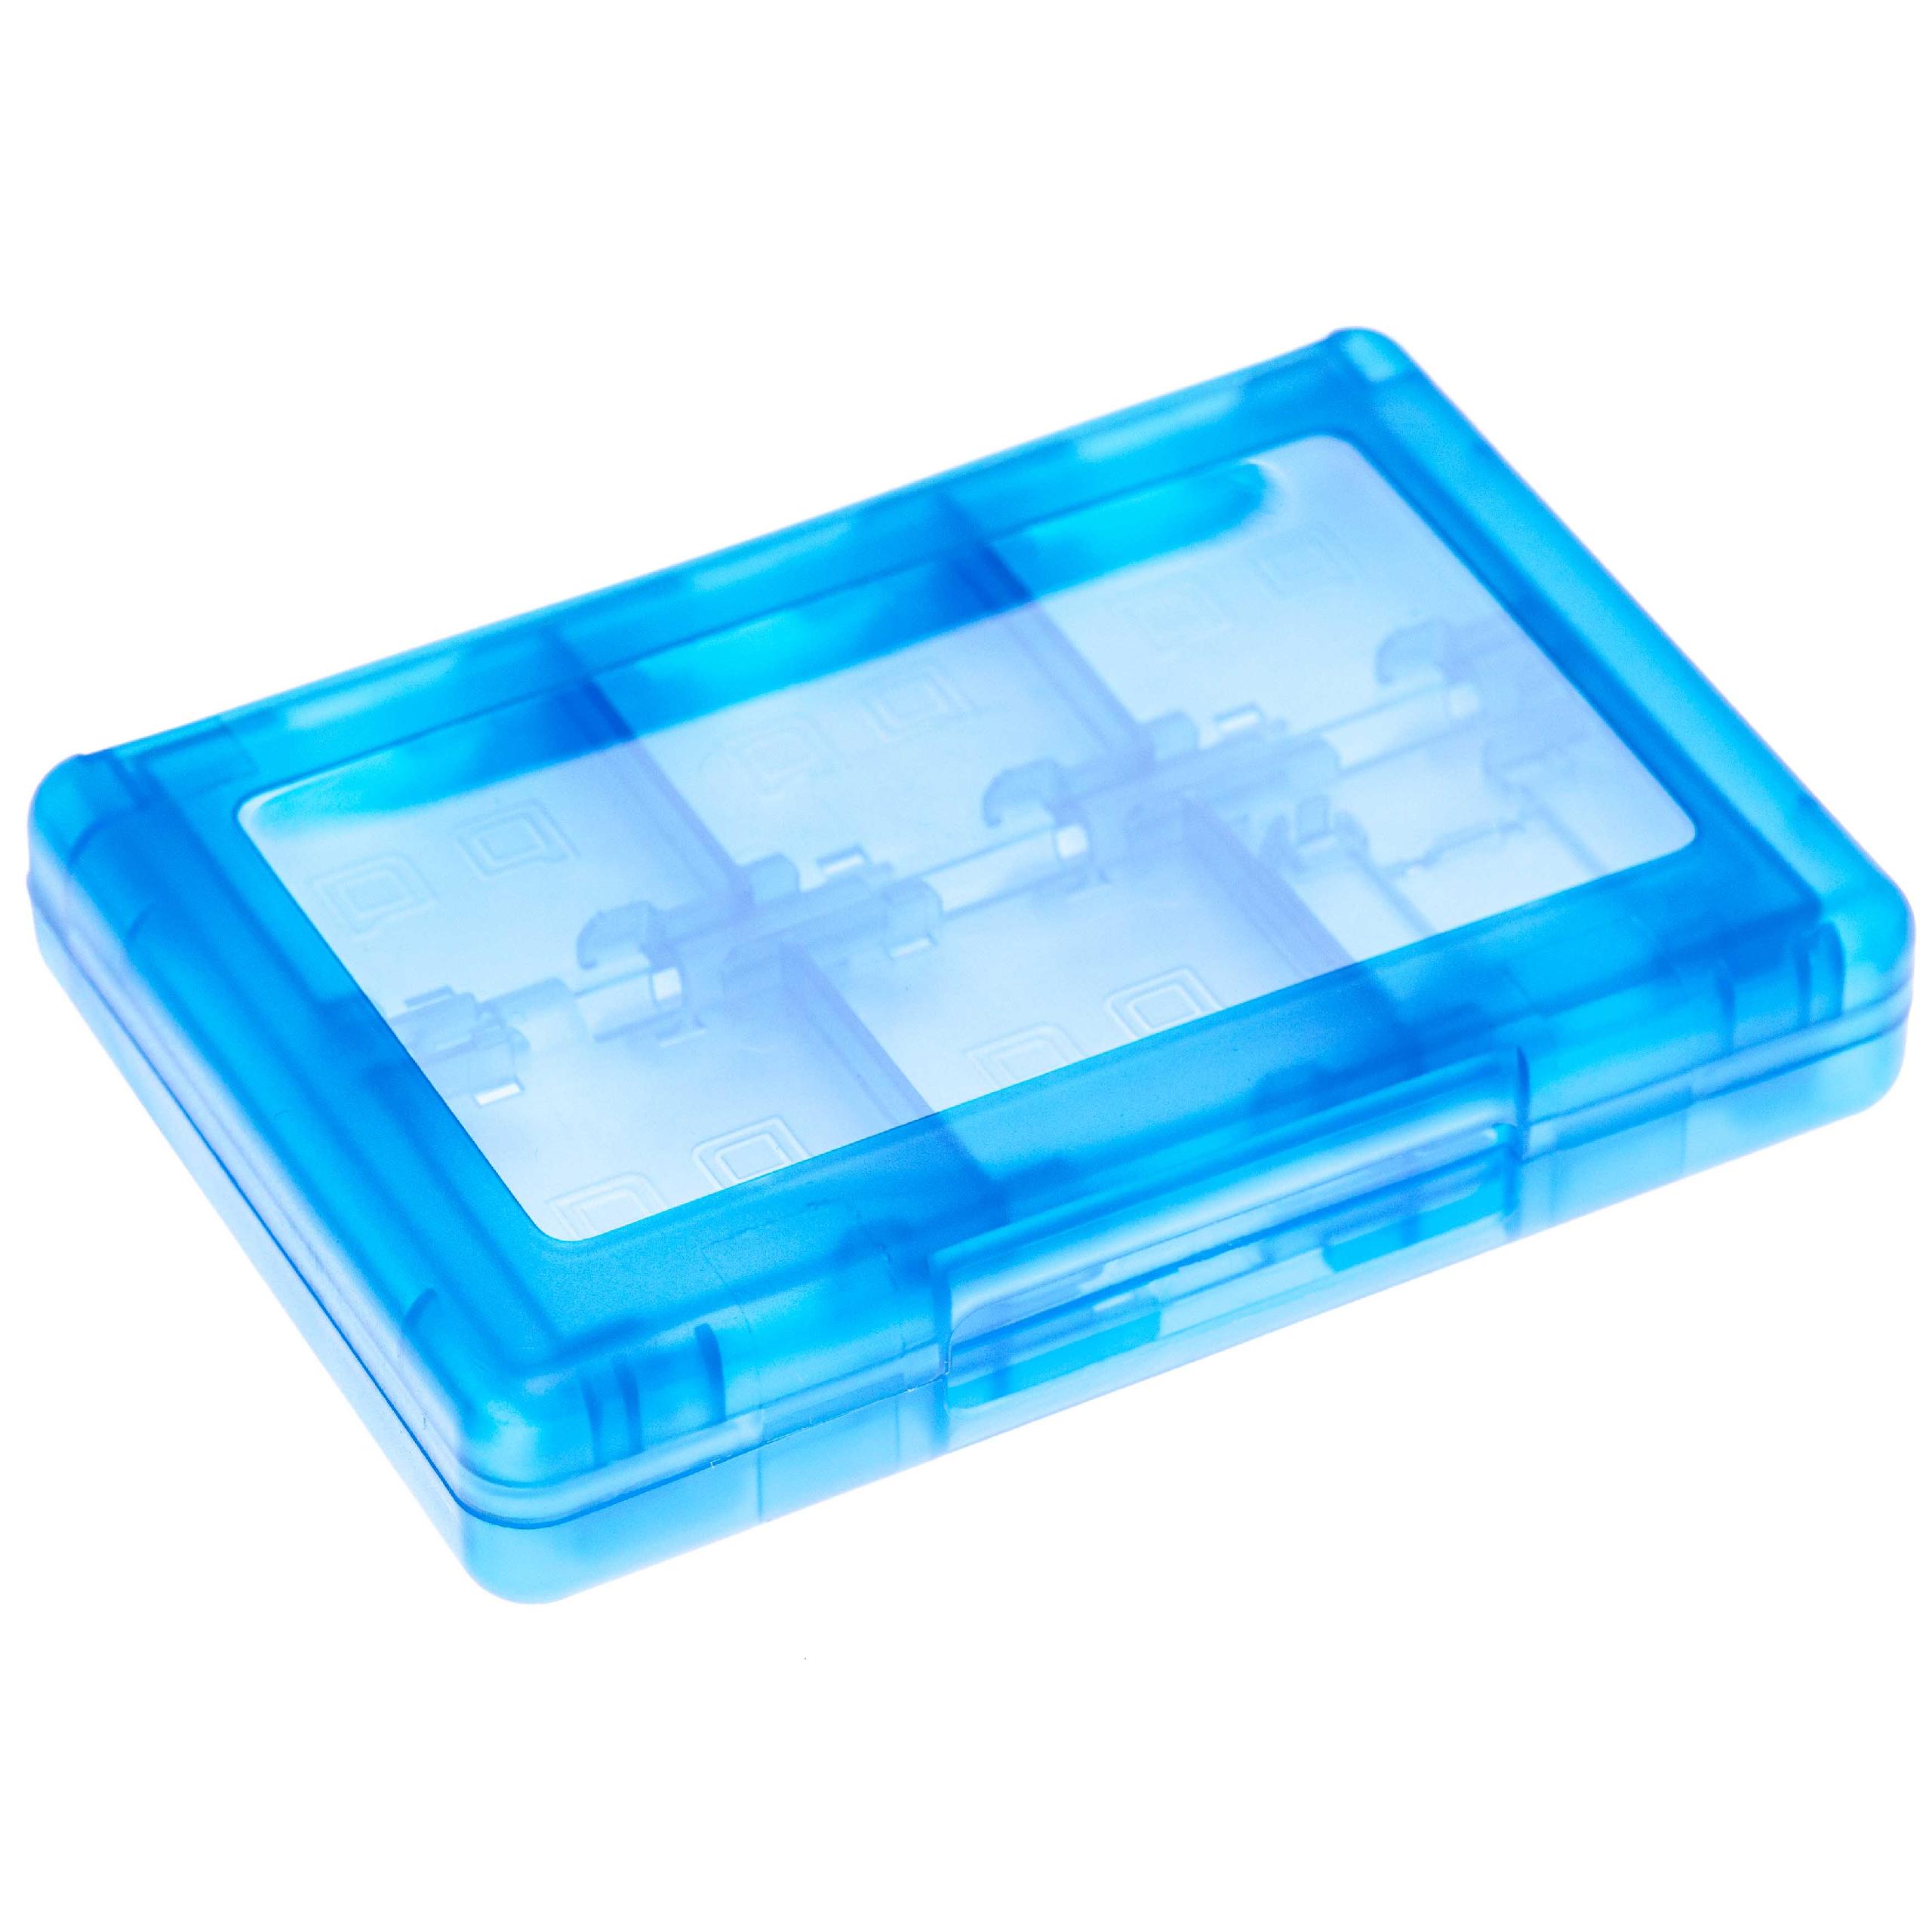 Etui für Konsolenspiele und Speicherkarten passend für Nintendo 3DS - Case, Kunststoff, transparent / blau